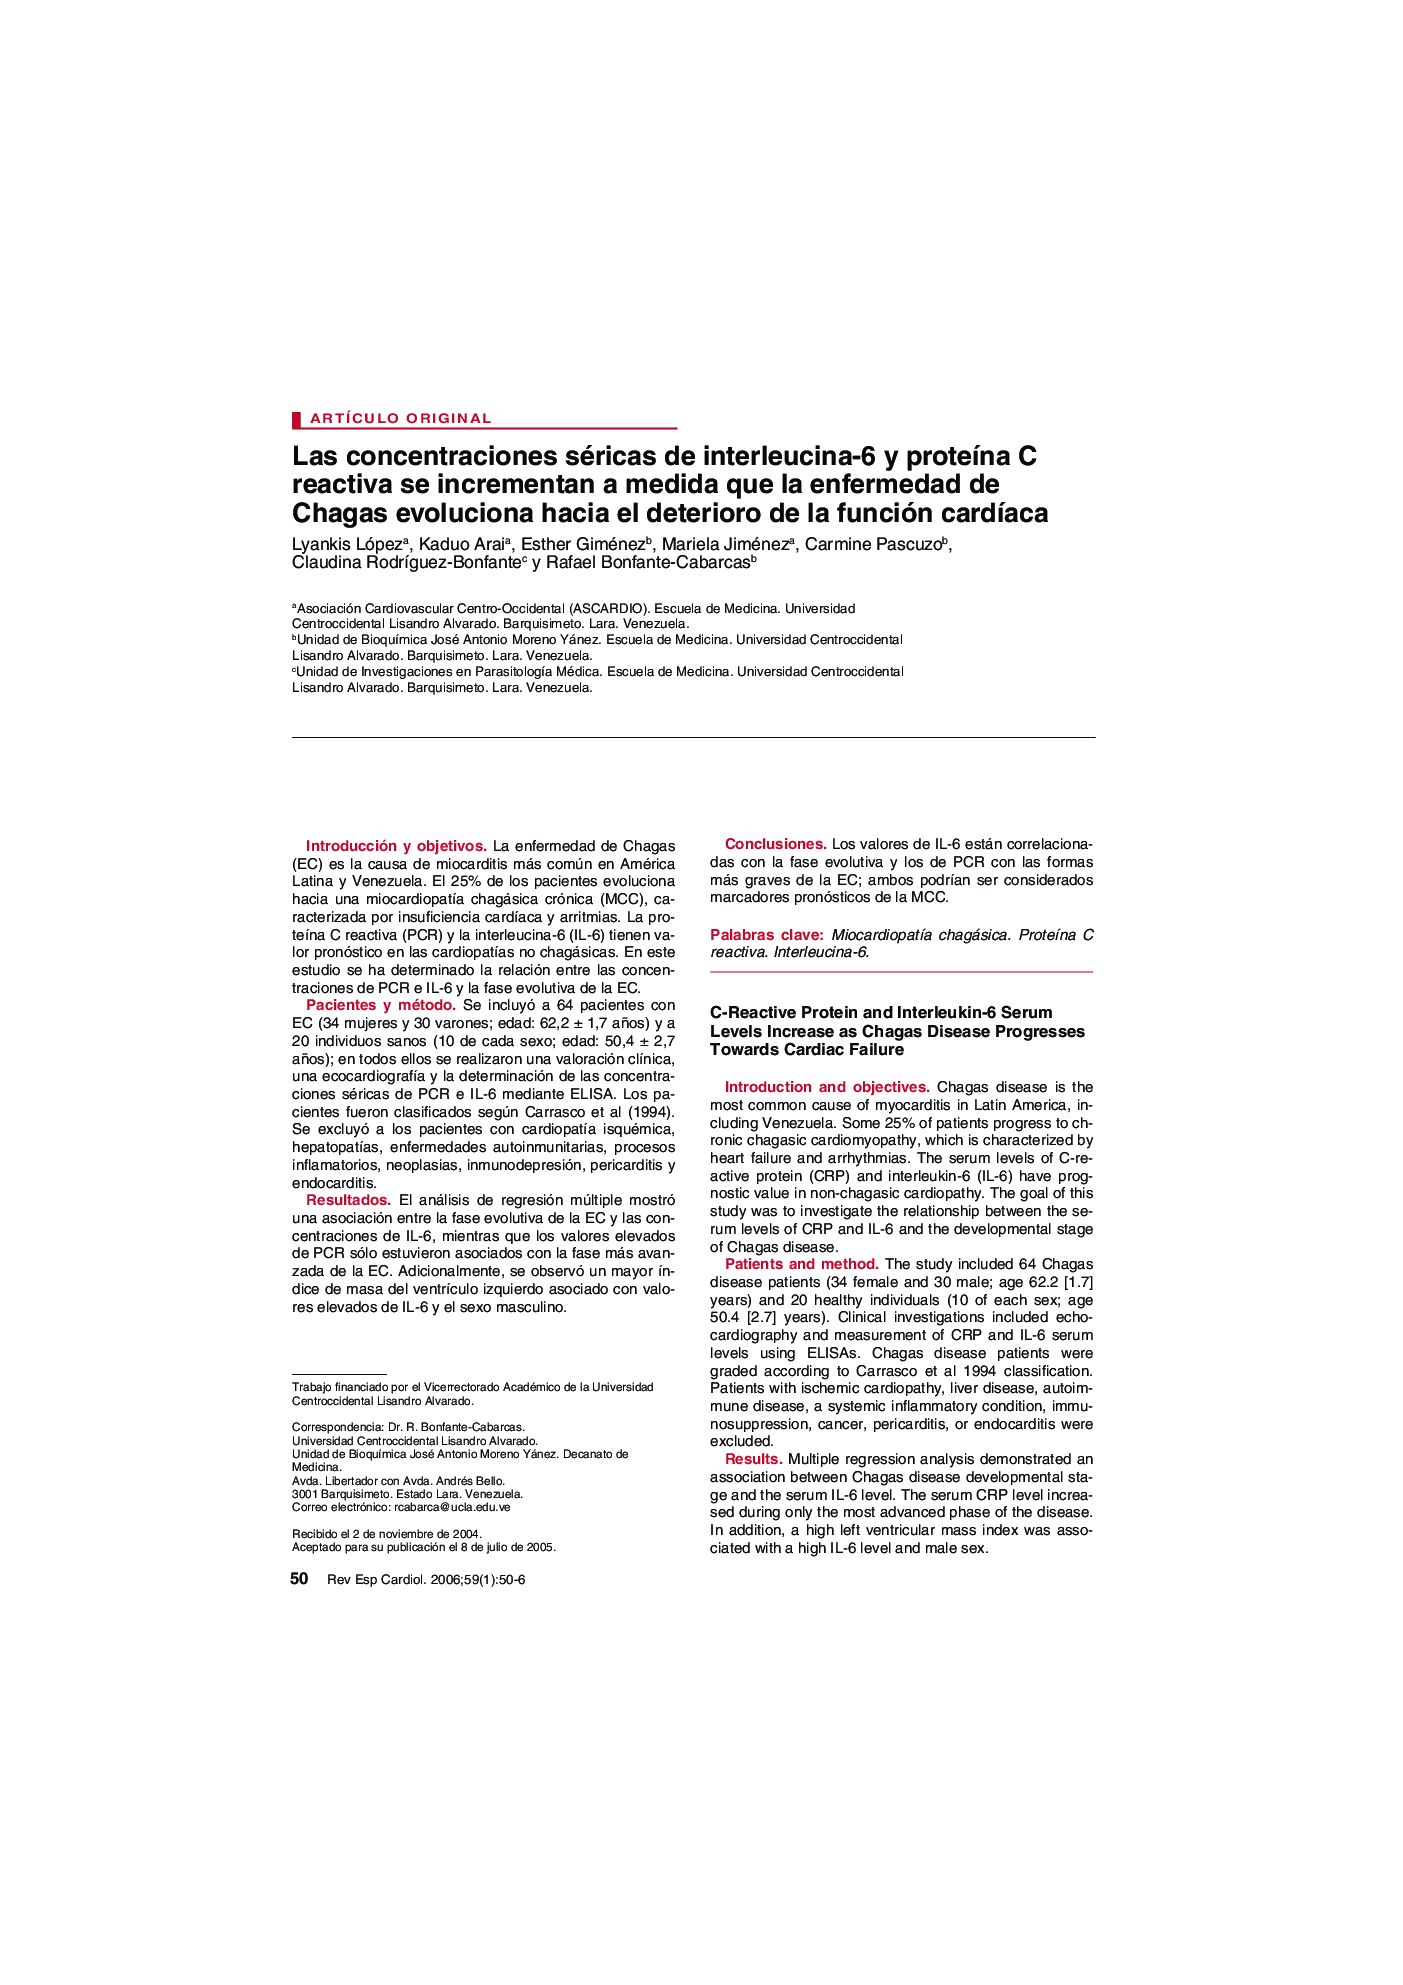 Las concentraciones séricas de interleucina-6 y proteÃ­na C reactiva se incrementan a medida que la enfermedad de Chagas evoluciona hacia el deterioro de la función cardÃ­aca